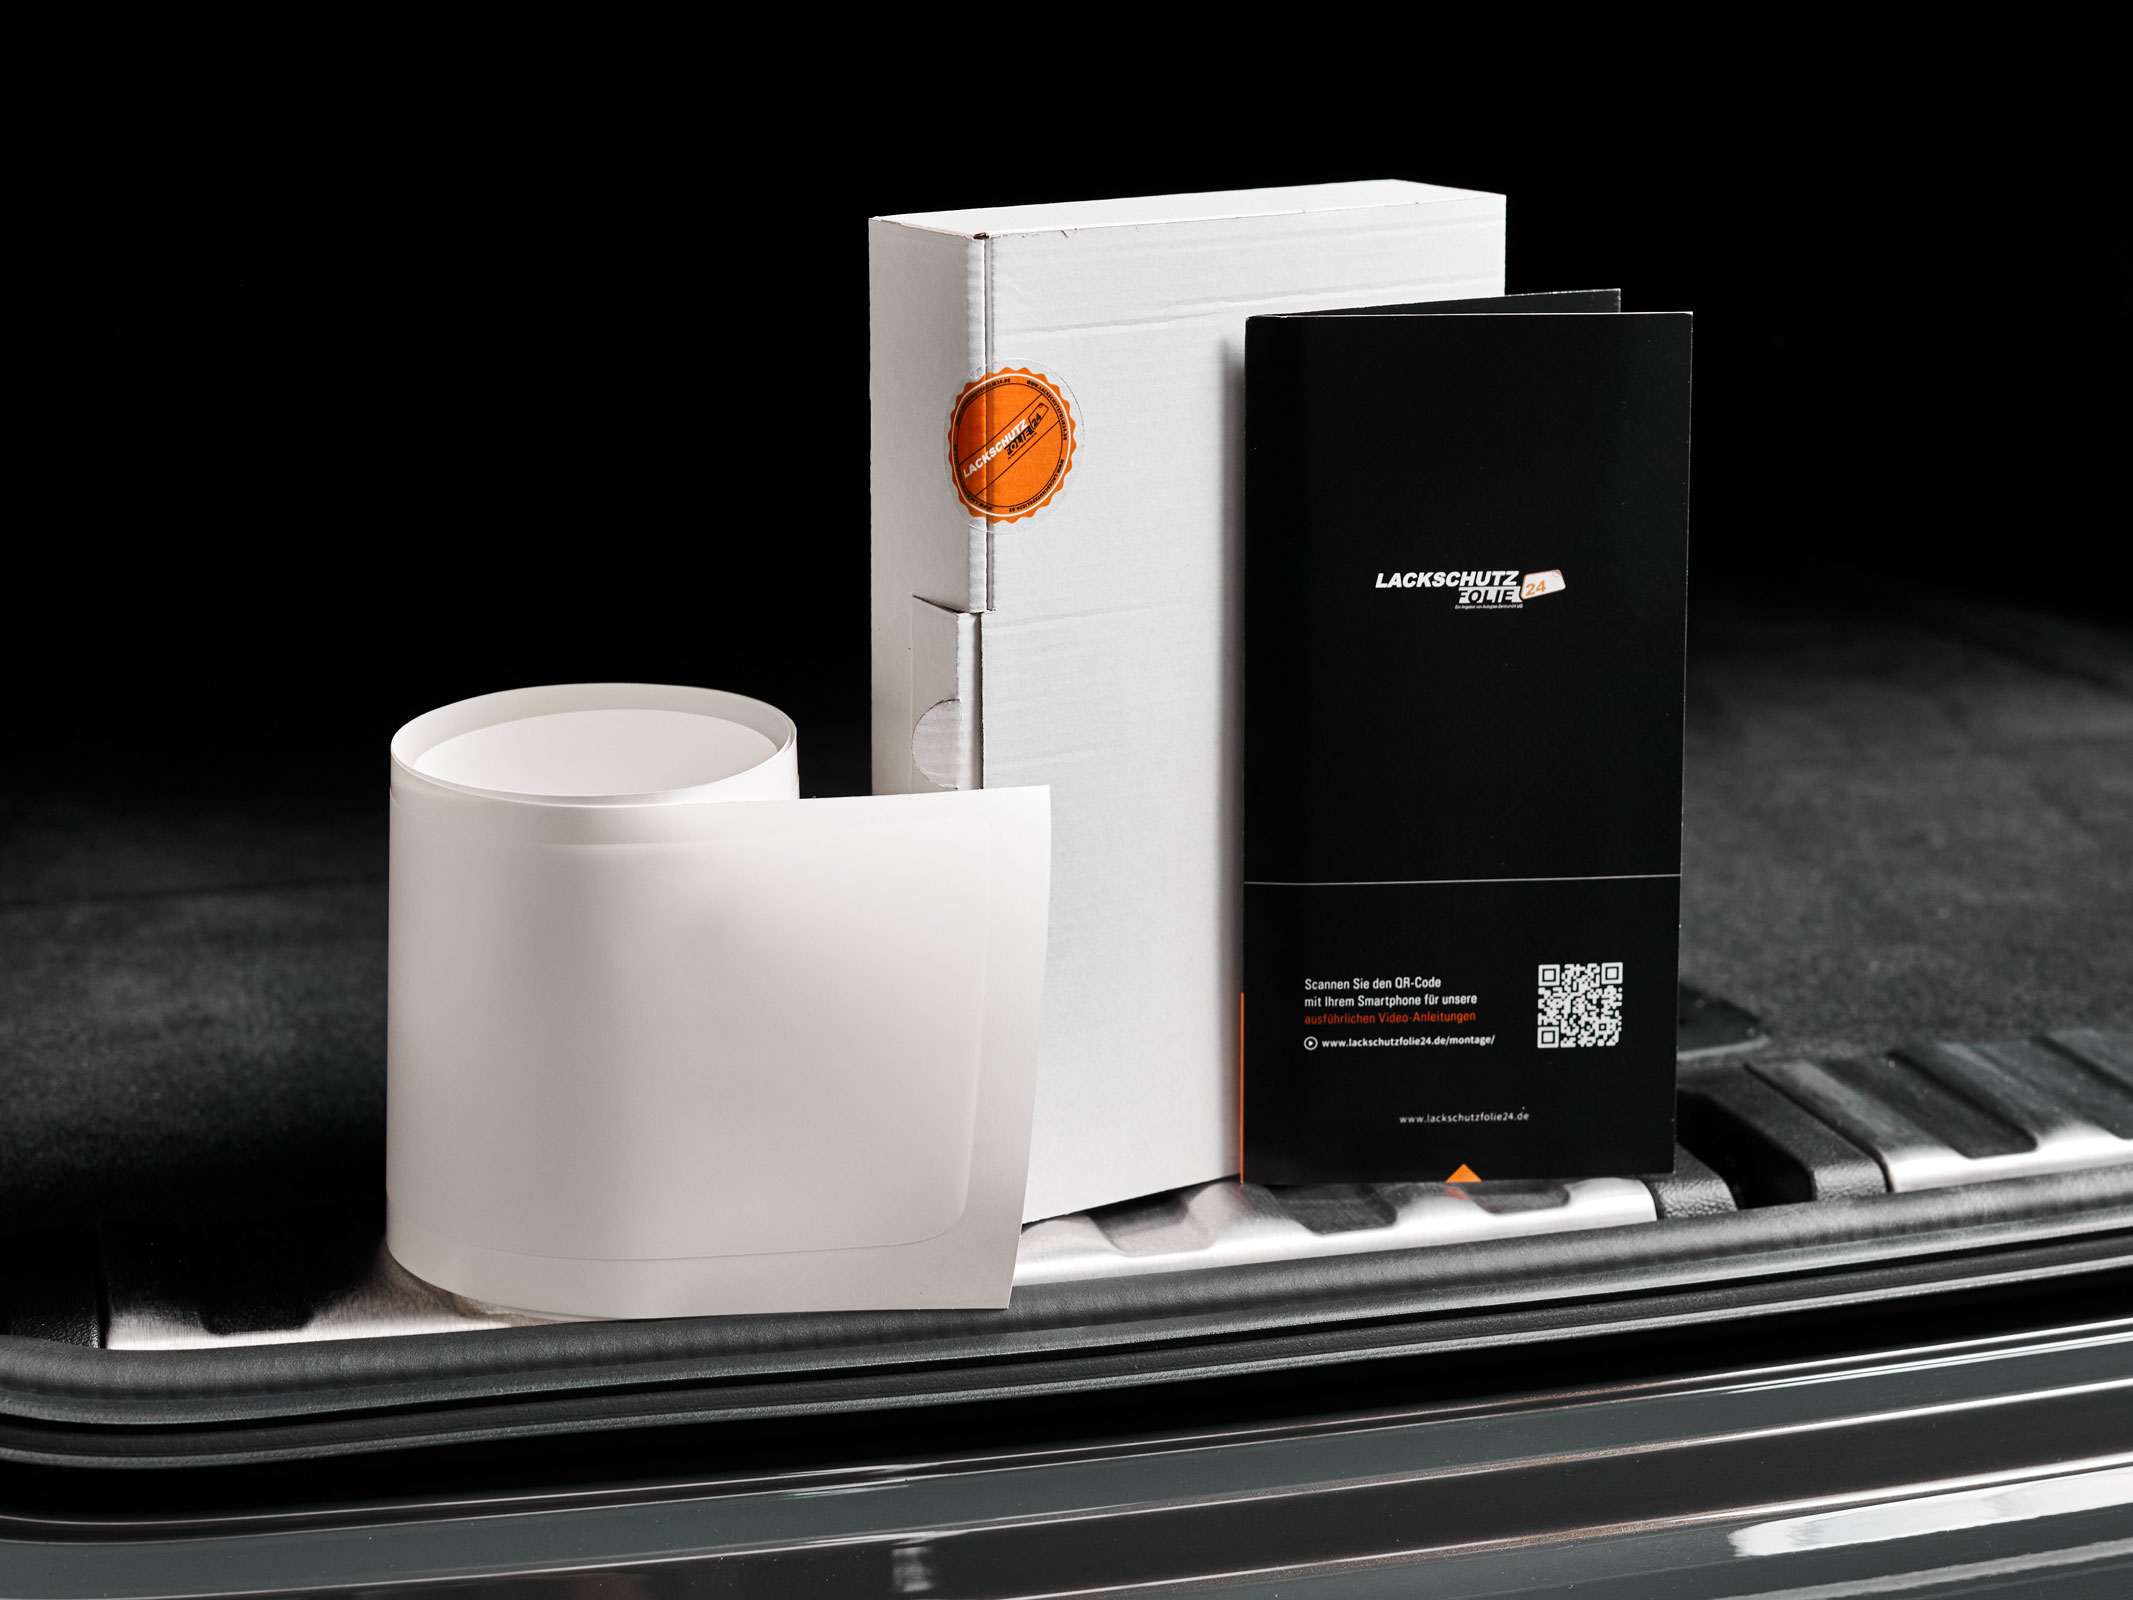 Ladekantenschutzfolie - Transparent Glatt MATT 110 µm stark  für Opel Corsa  Typ D, BJ 2006-2014